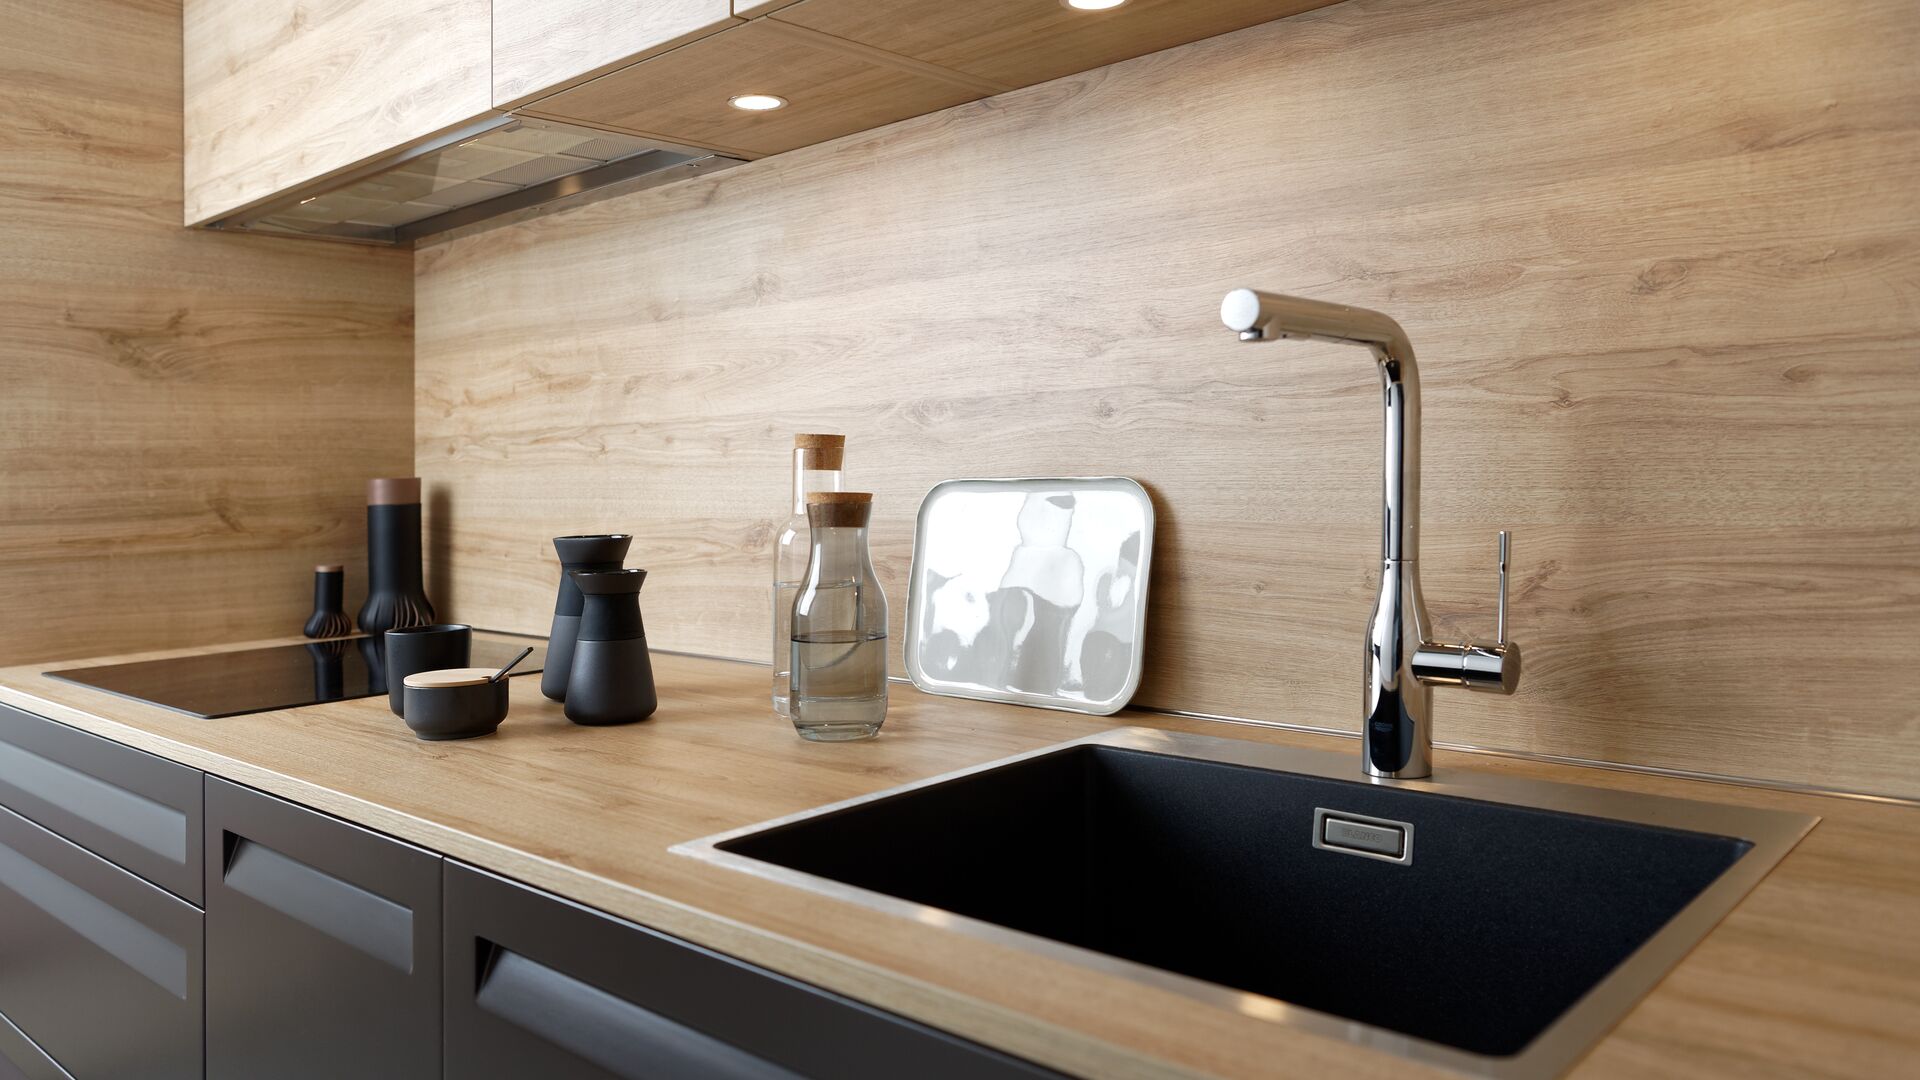 Küche mit Nischenrückwand in Holz, Kochfeld und in Hängeschrank mit Einbauspots integrierter Haube